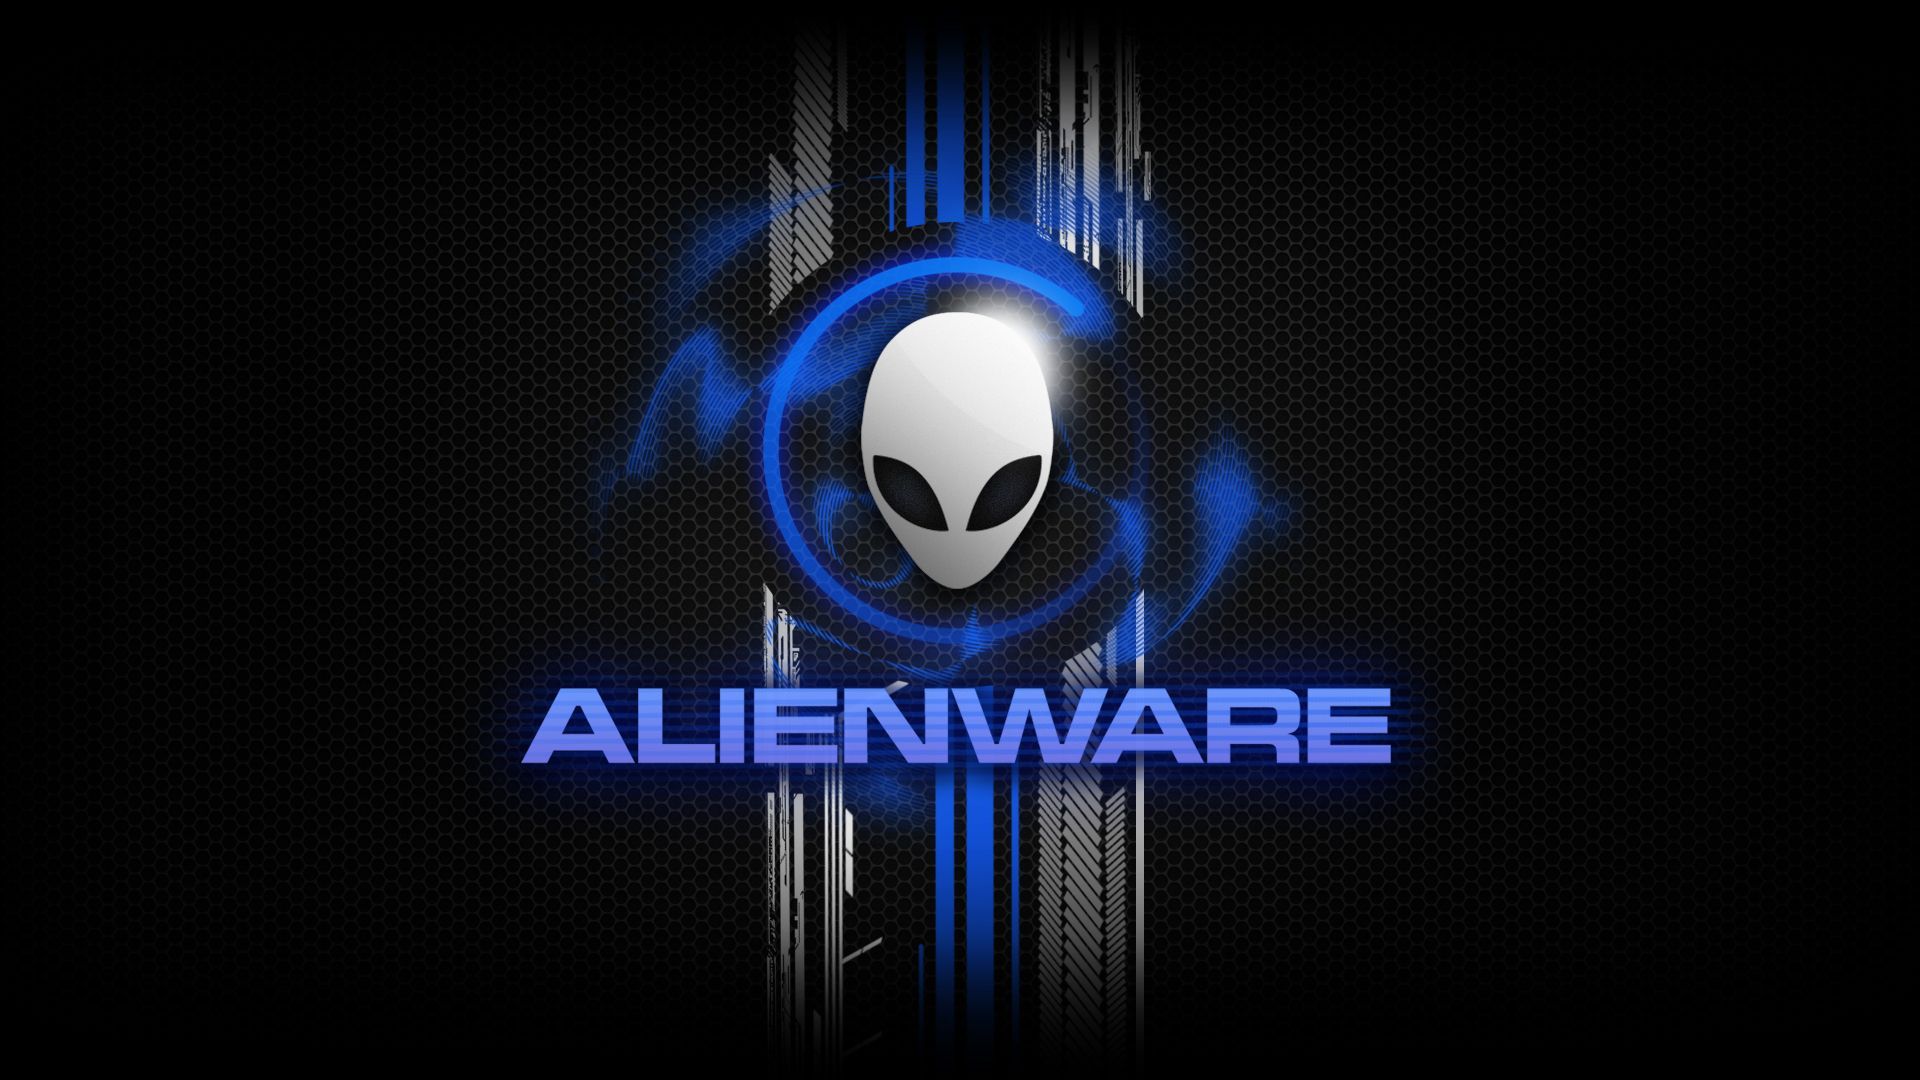 Alienware Desktop Backgrounds - Alienware Fx Themes